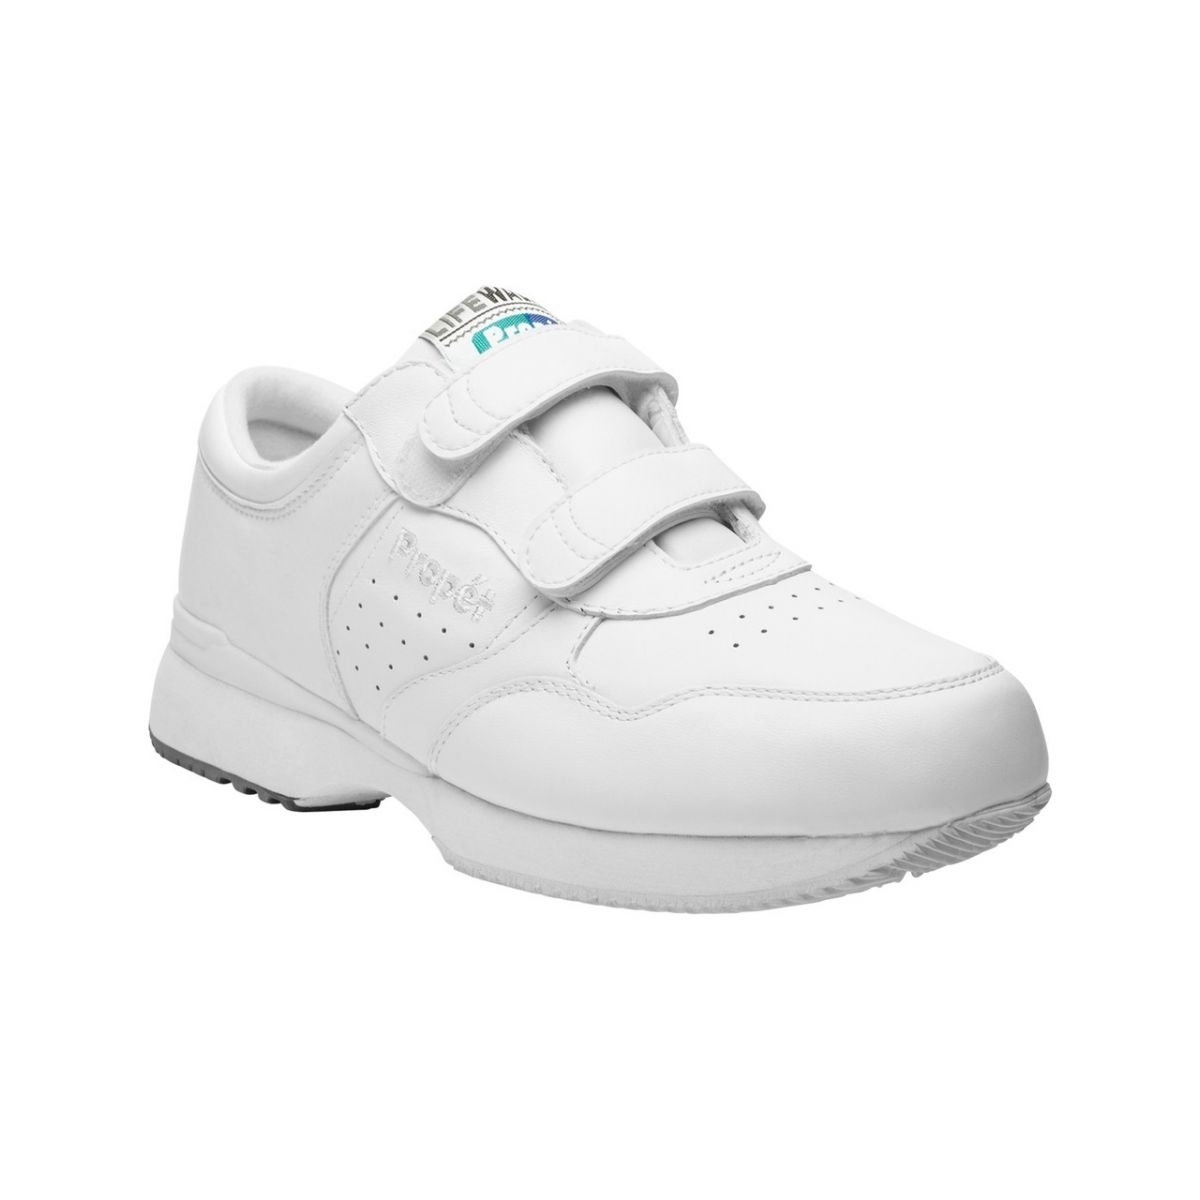 Propet Men's Life Walker Strap Shoe White - M3705WHT WHITE - WHITE, 7